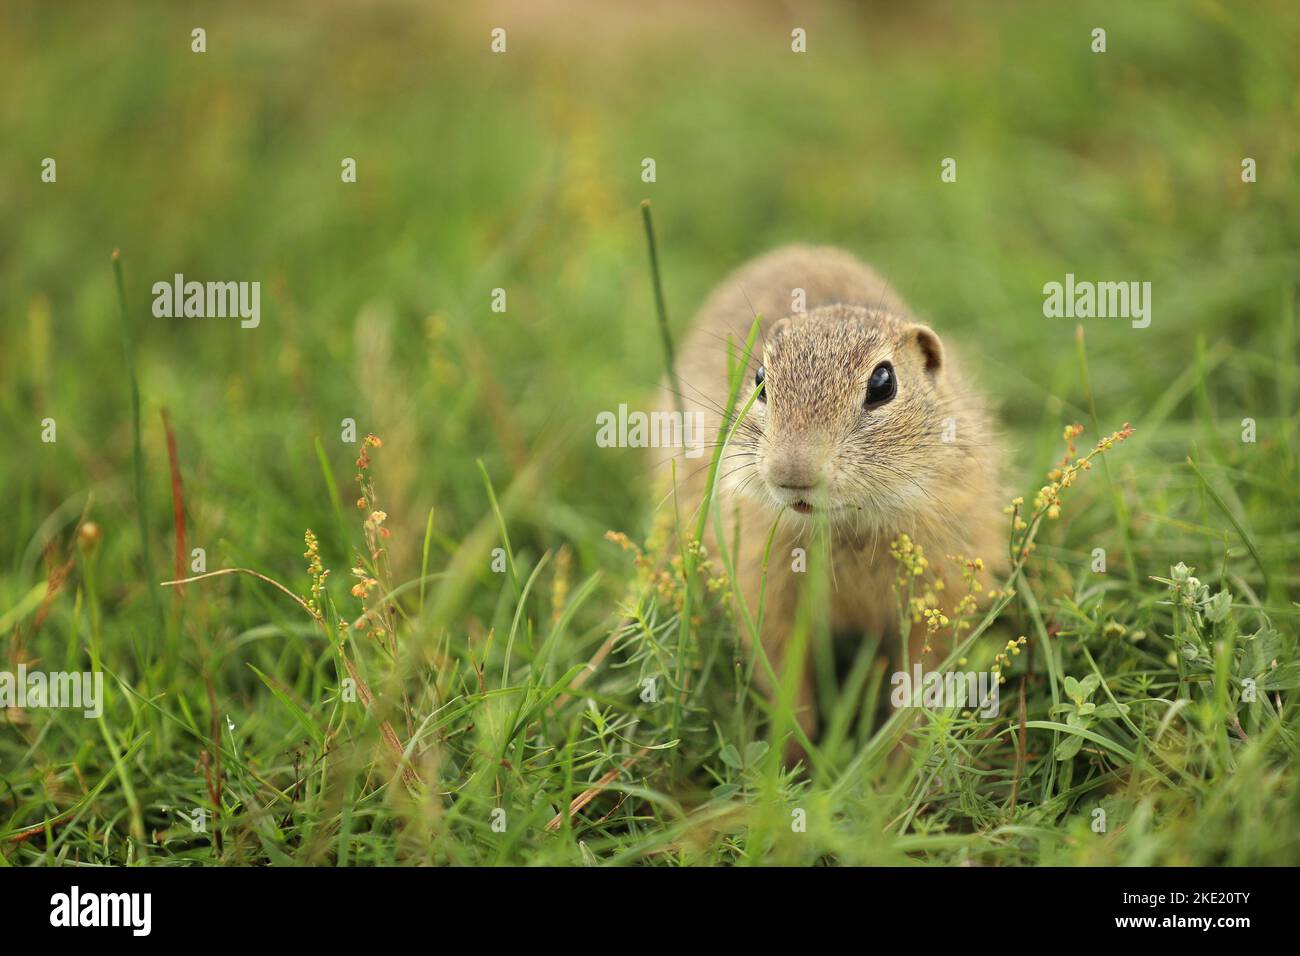 Écureuil européen debout dans l'herbe. Spermophilus citellus scène sauvage de la nature. Écureuil attentif sur la prairie Banque D'Images